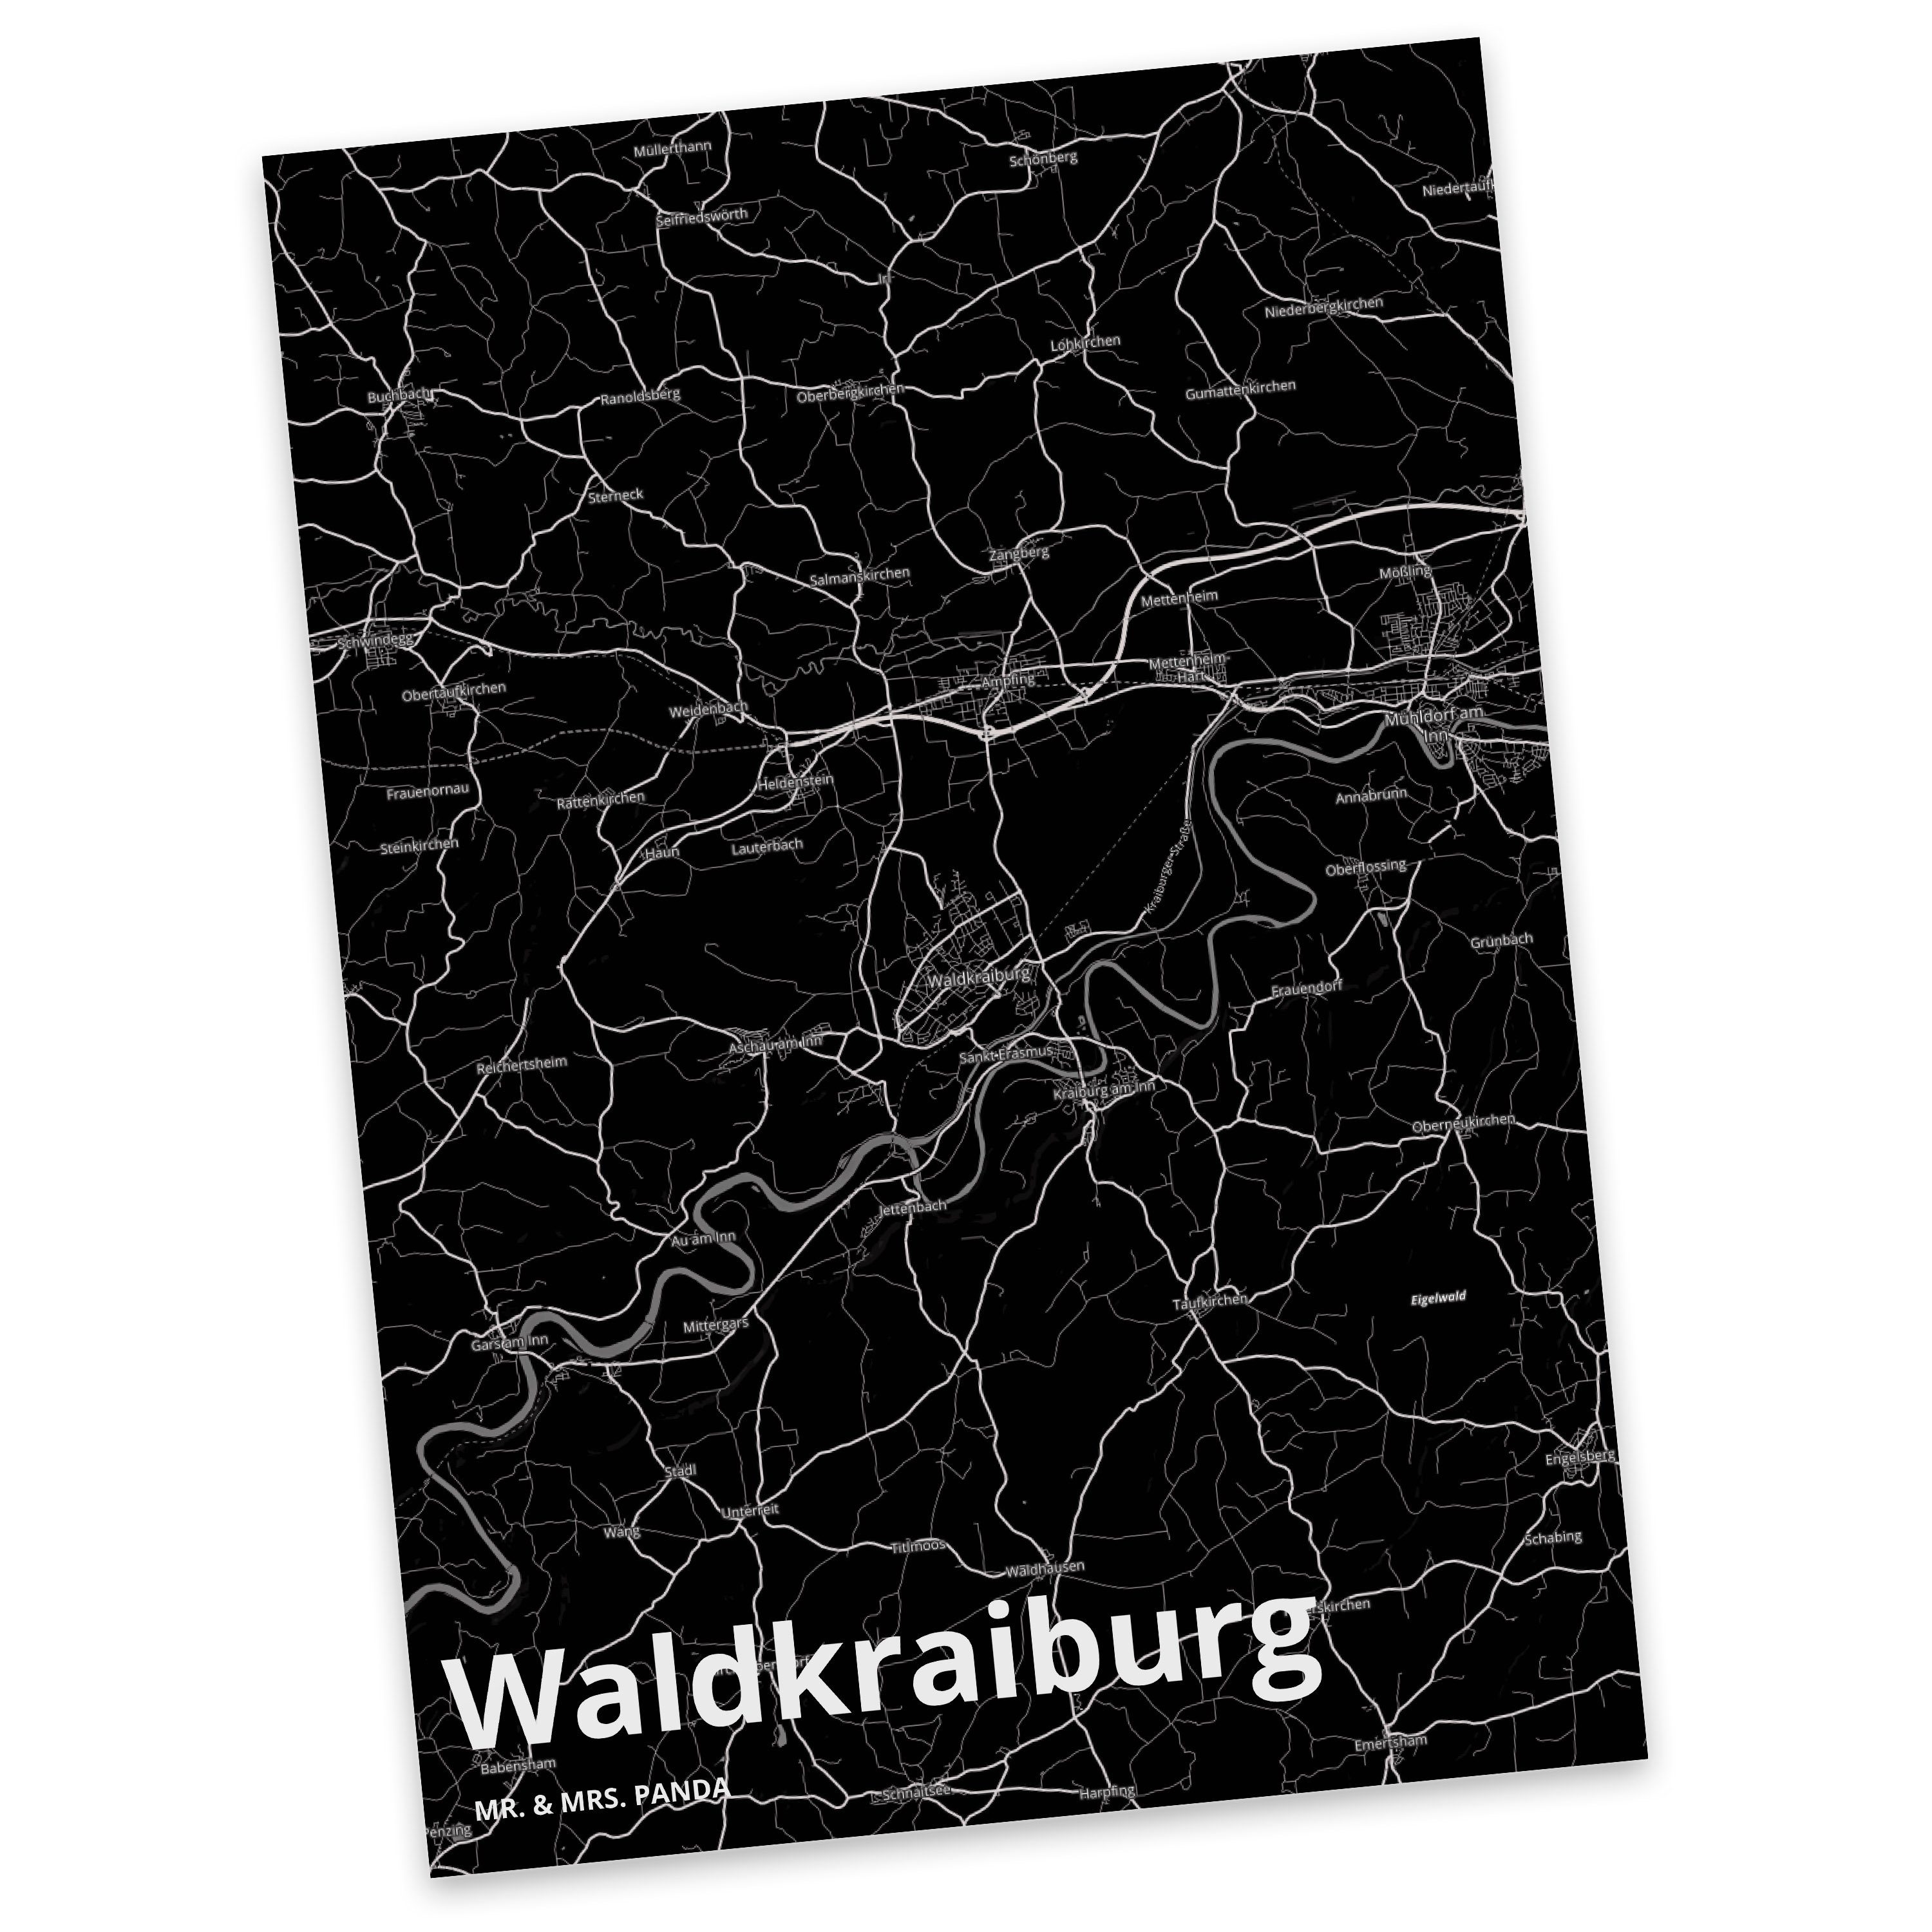 Mr. & Mrs. Panda Postkarte Waldkraiburg - Geschenk, Dorf, Städte, Karte, Dankeskarte, Einladung